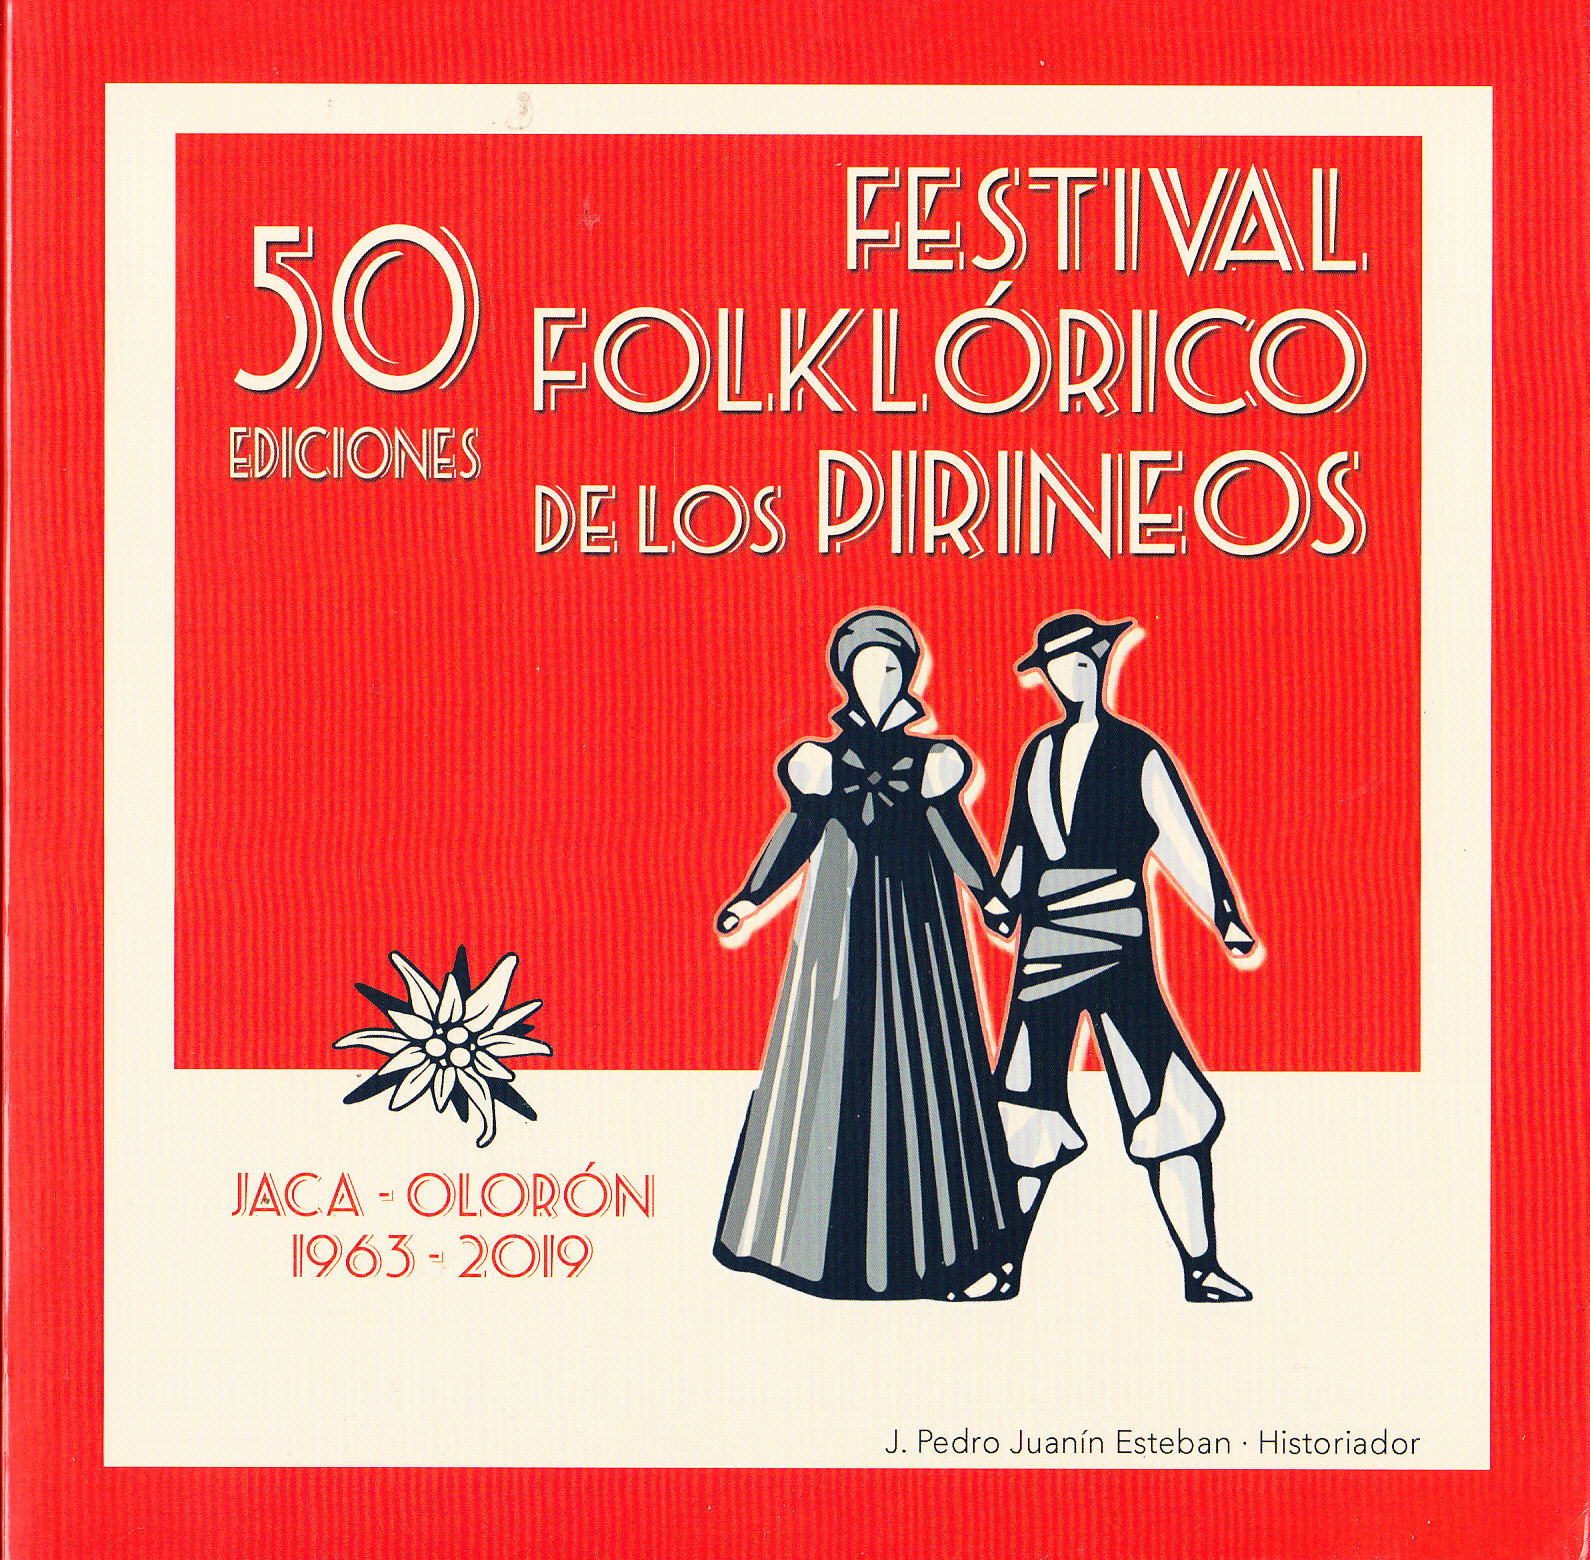 50 EDICIONES FESTIVAL FOLKLóRICO DE LOS PIRINEOS